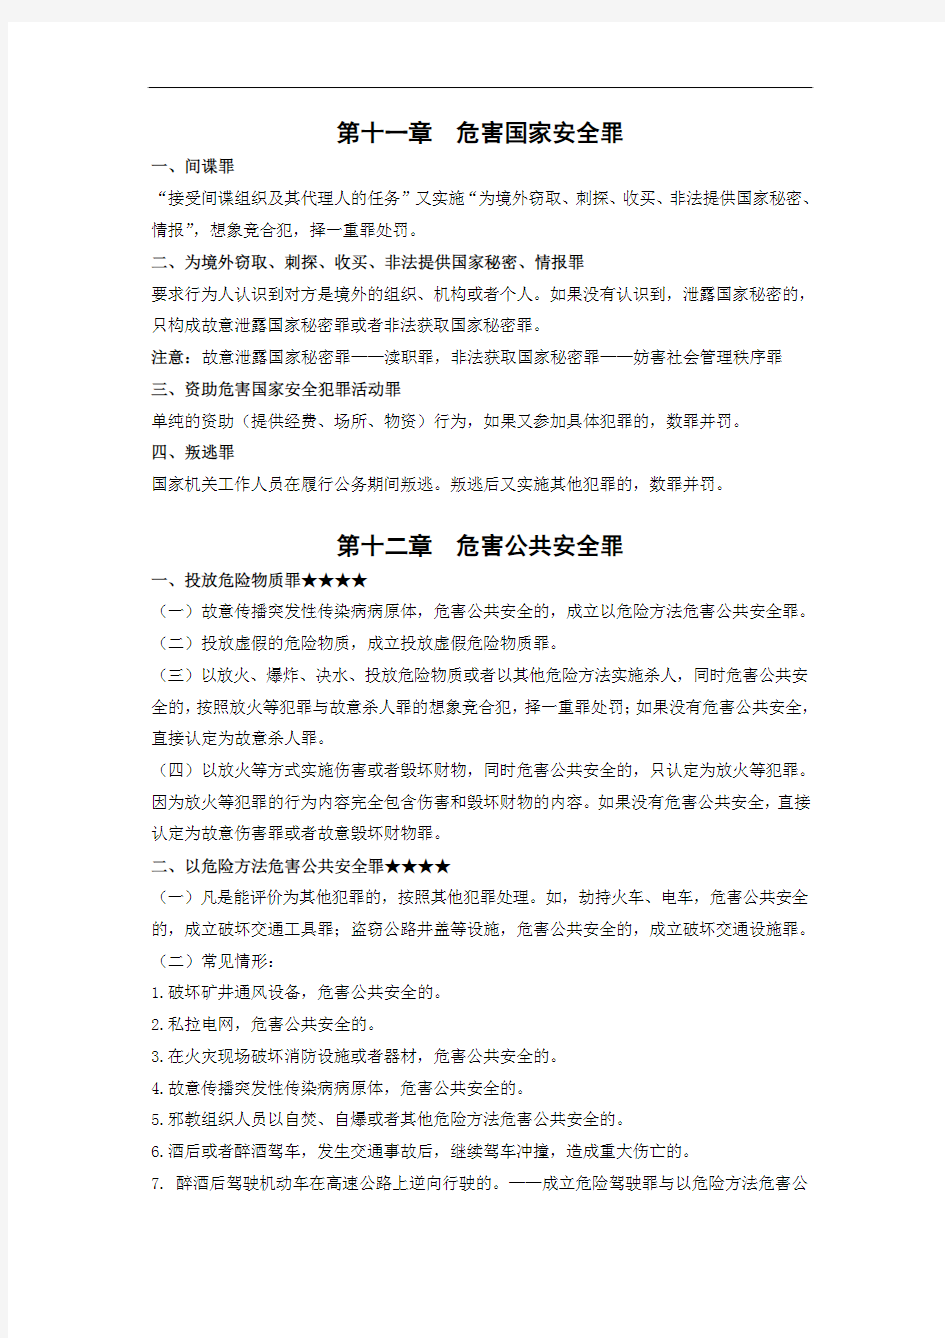 刘凤科90页音频精华笔记【刑法分则】